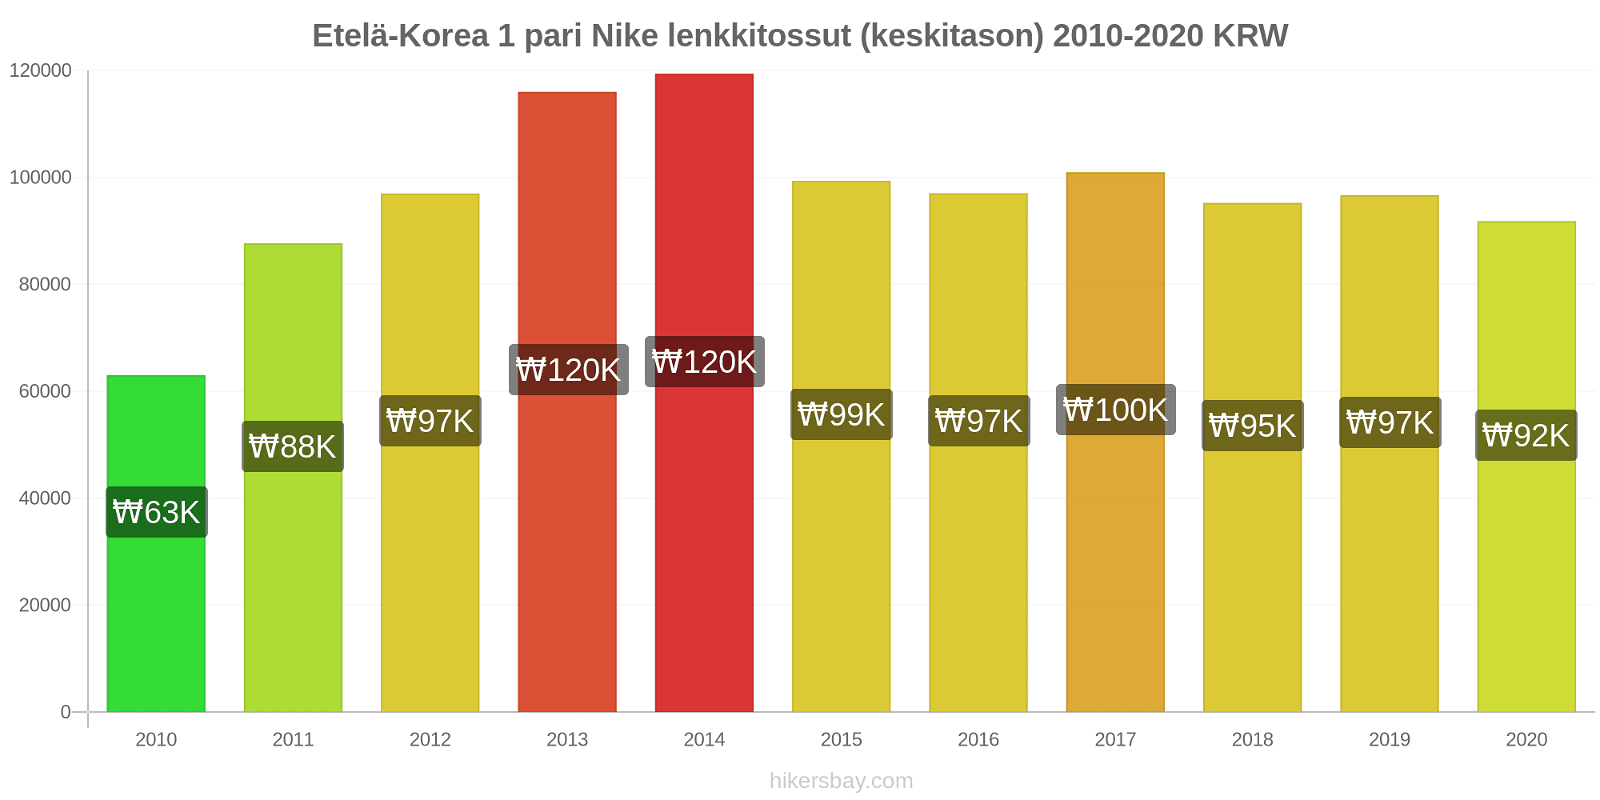 Etelä-Korea hintojen muutokset 1 pari Nike lenkkitossut (keskitason) hikersbay.com